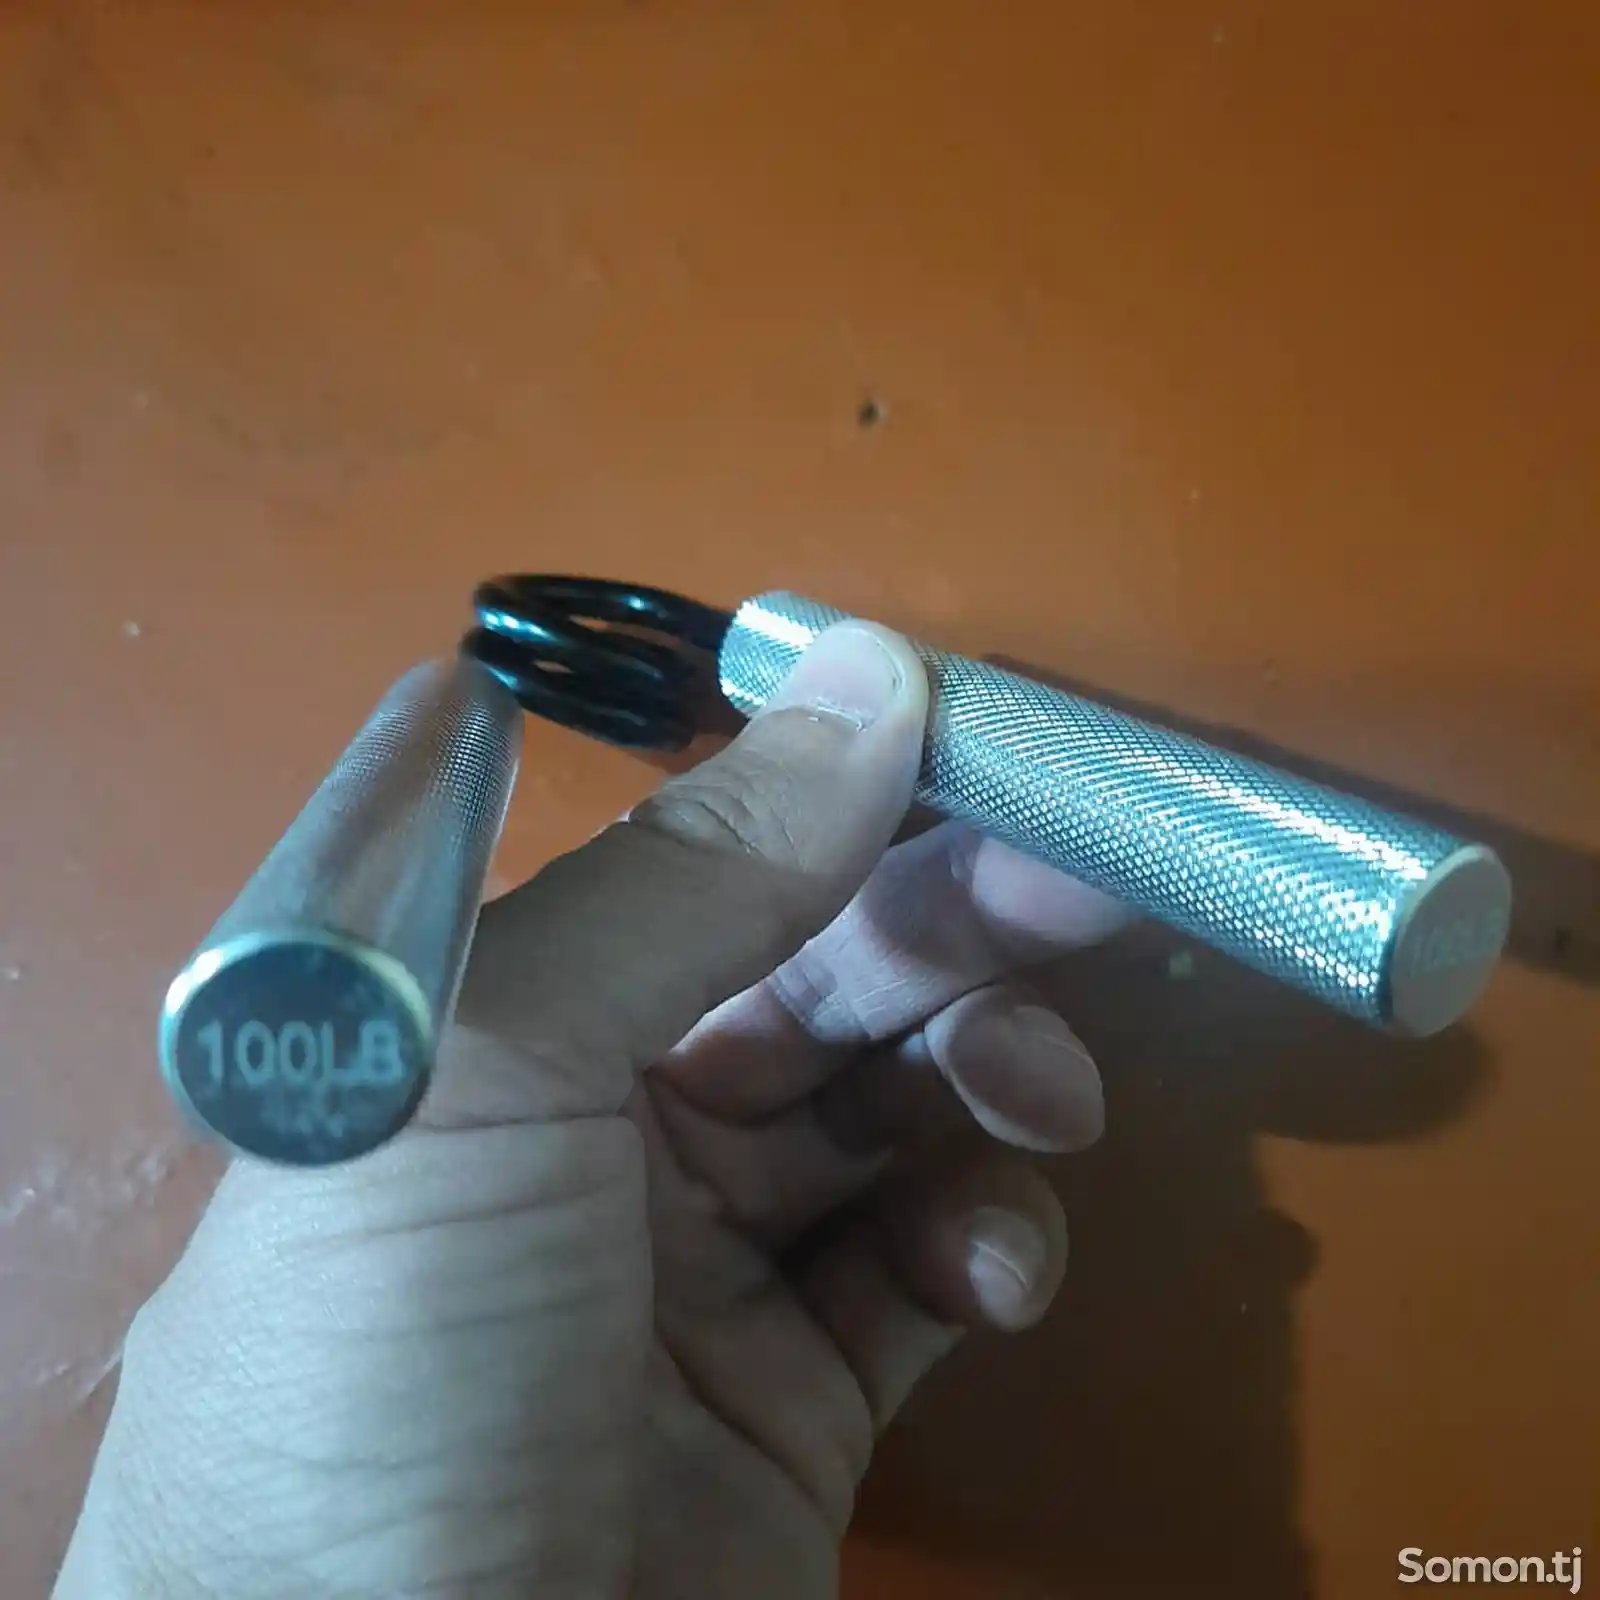 Эспандер кистевой ножницы, металлическая пружина, алюминиевые ручки.100lb-45,4кг-6